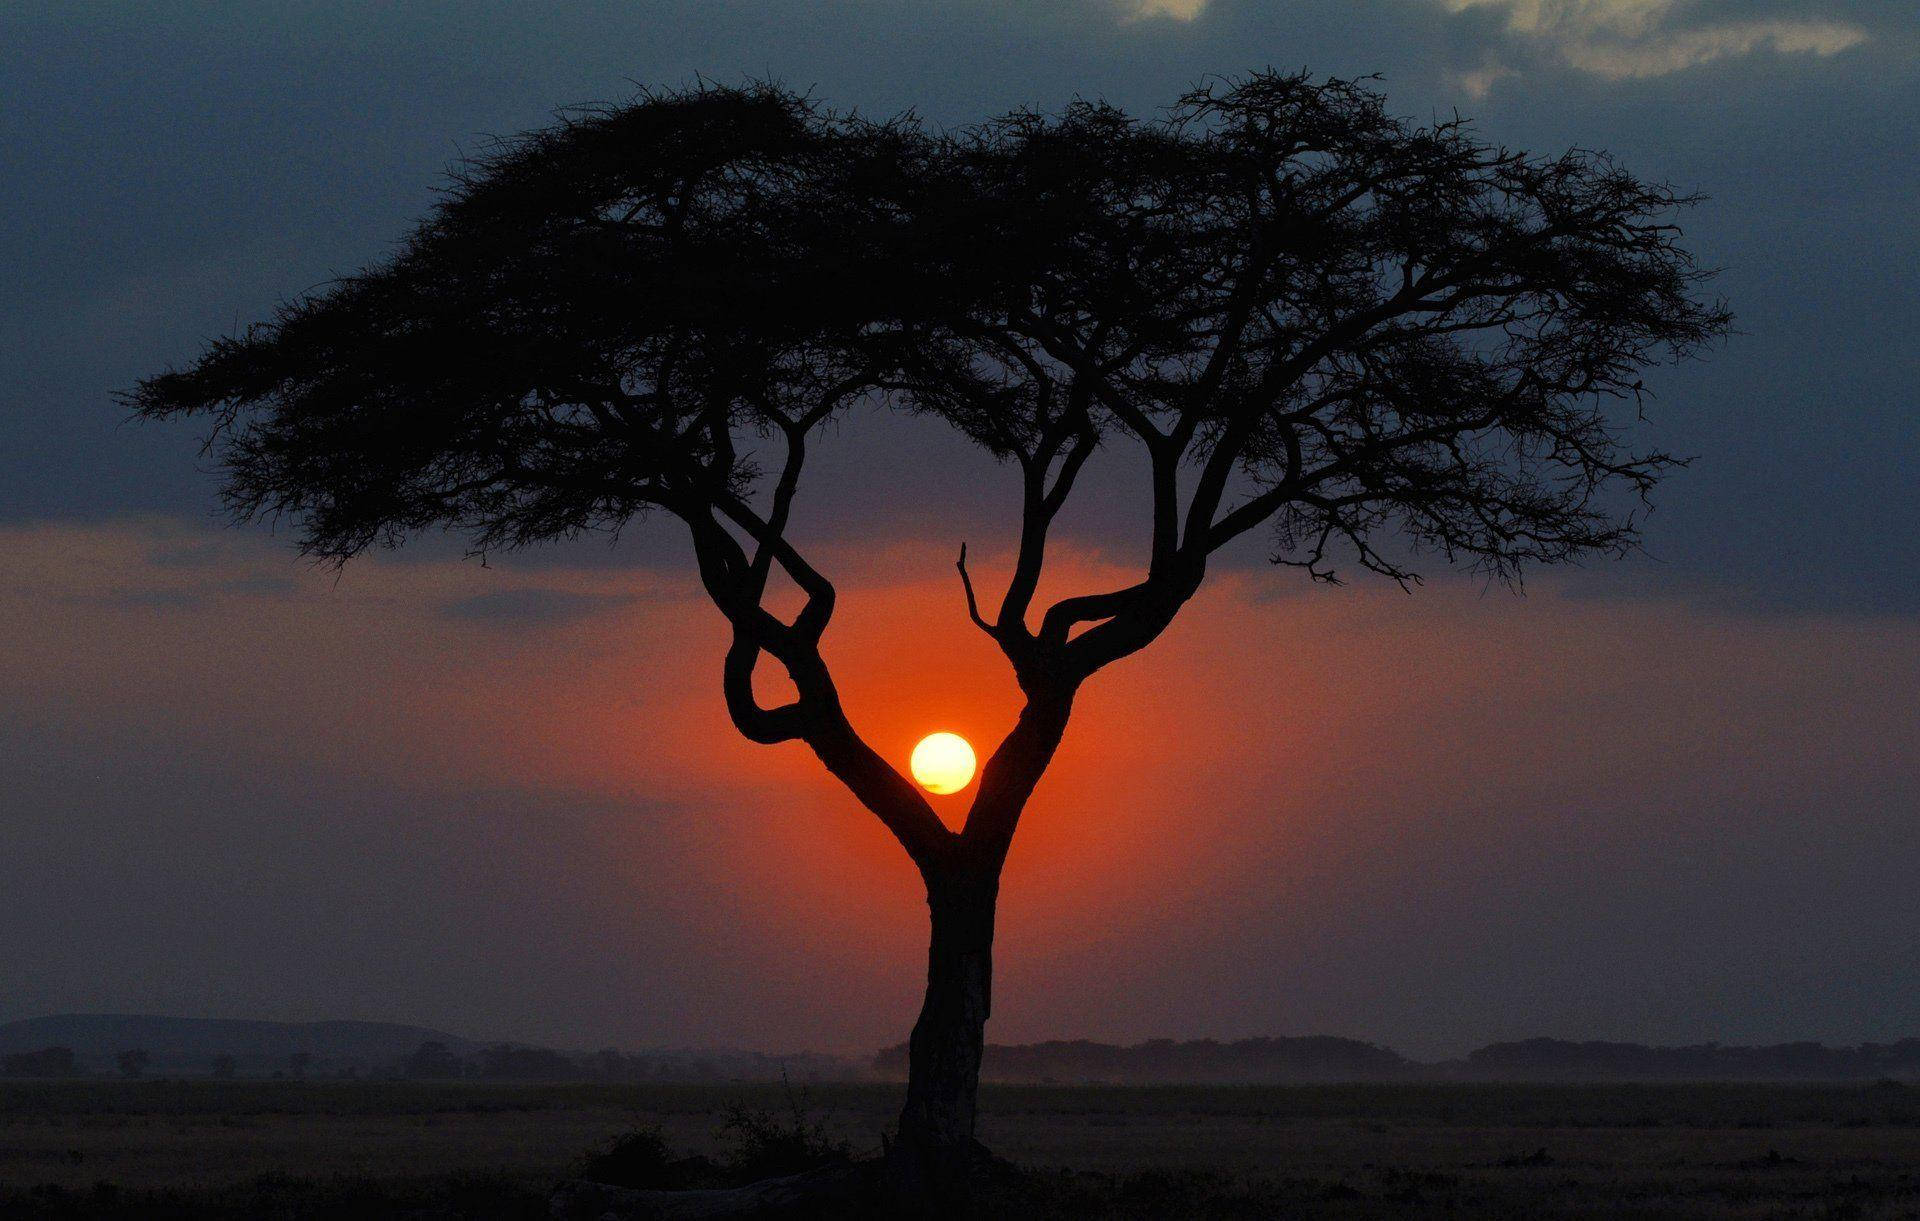 Kenya Paraply Træ Ved Solnedgang Wallpaper